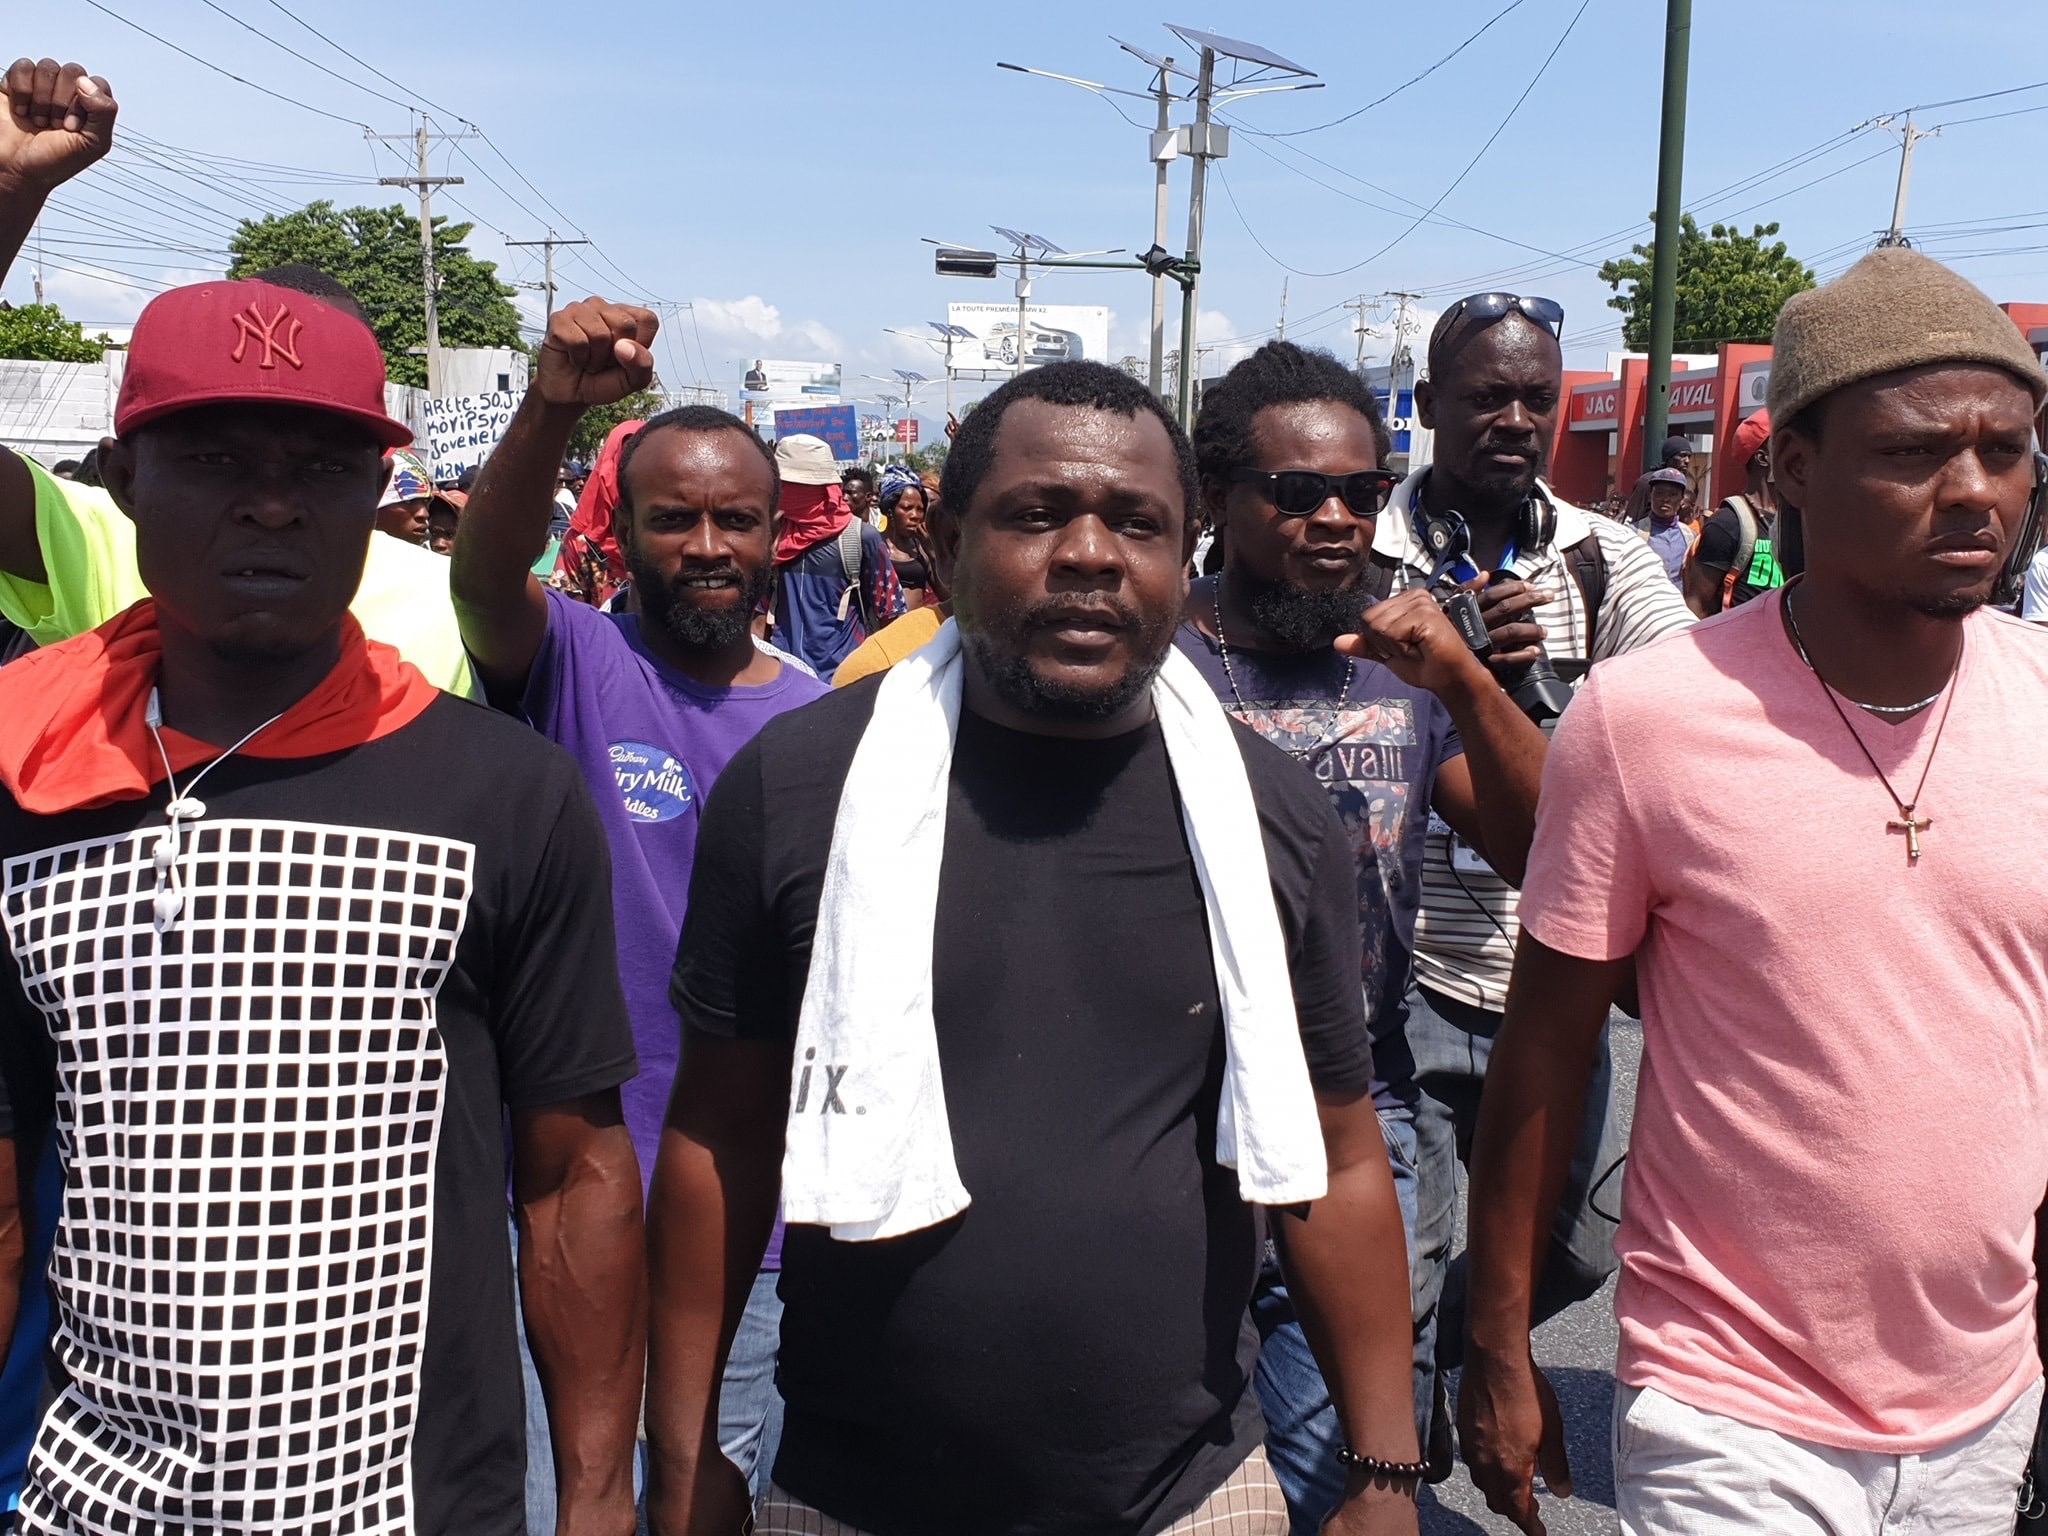 Justice pour Haïti, scandent des jeunes devant l'ambassade américaine